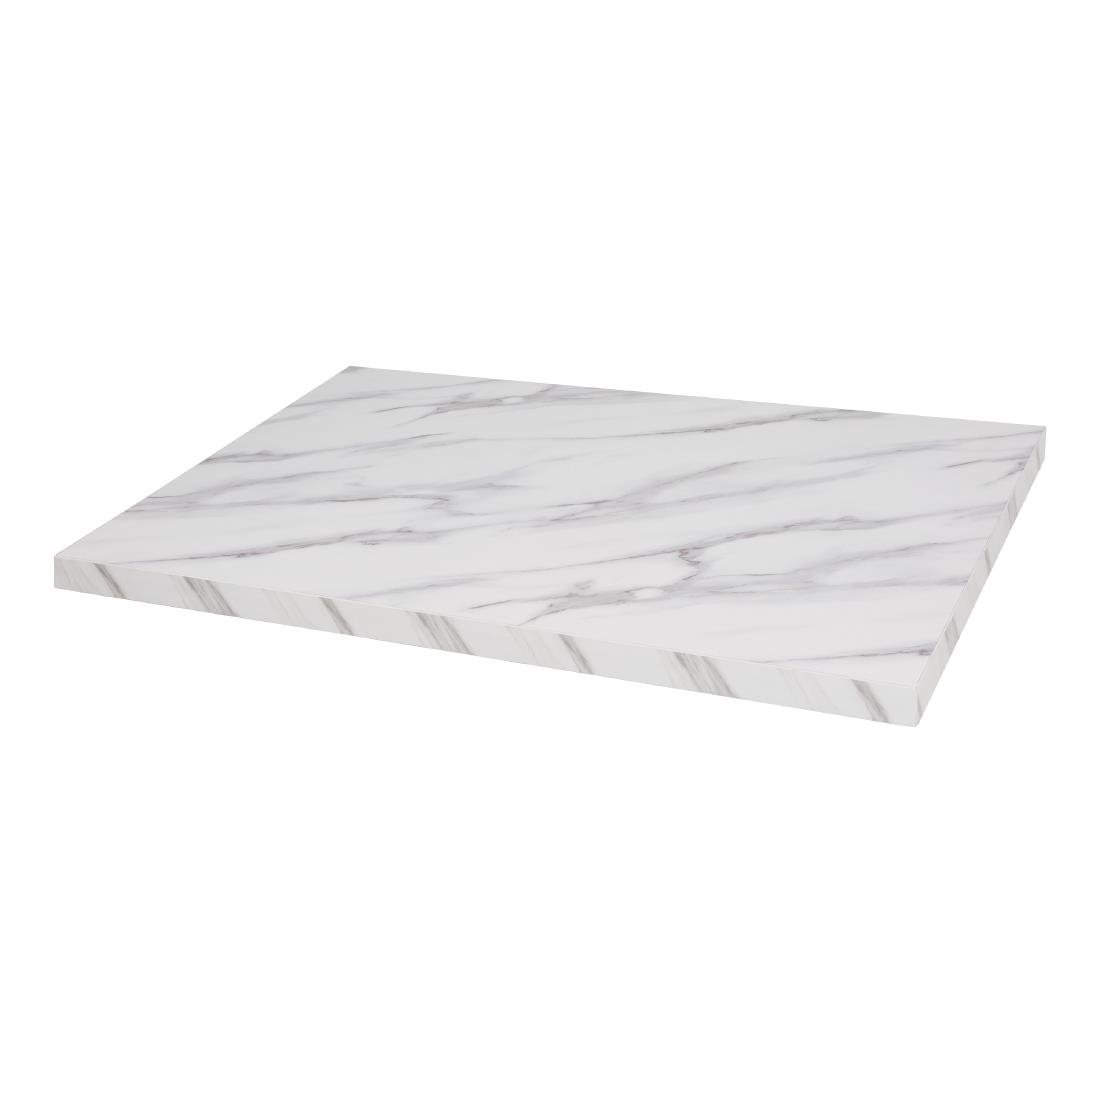 Plateau de table rectangulaire pré-percé Bolero effet marbre 1100 x 700 mm